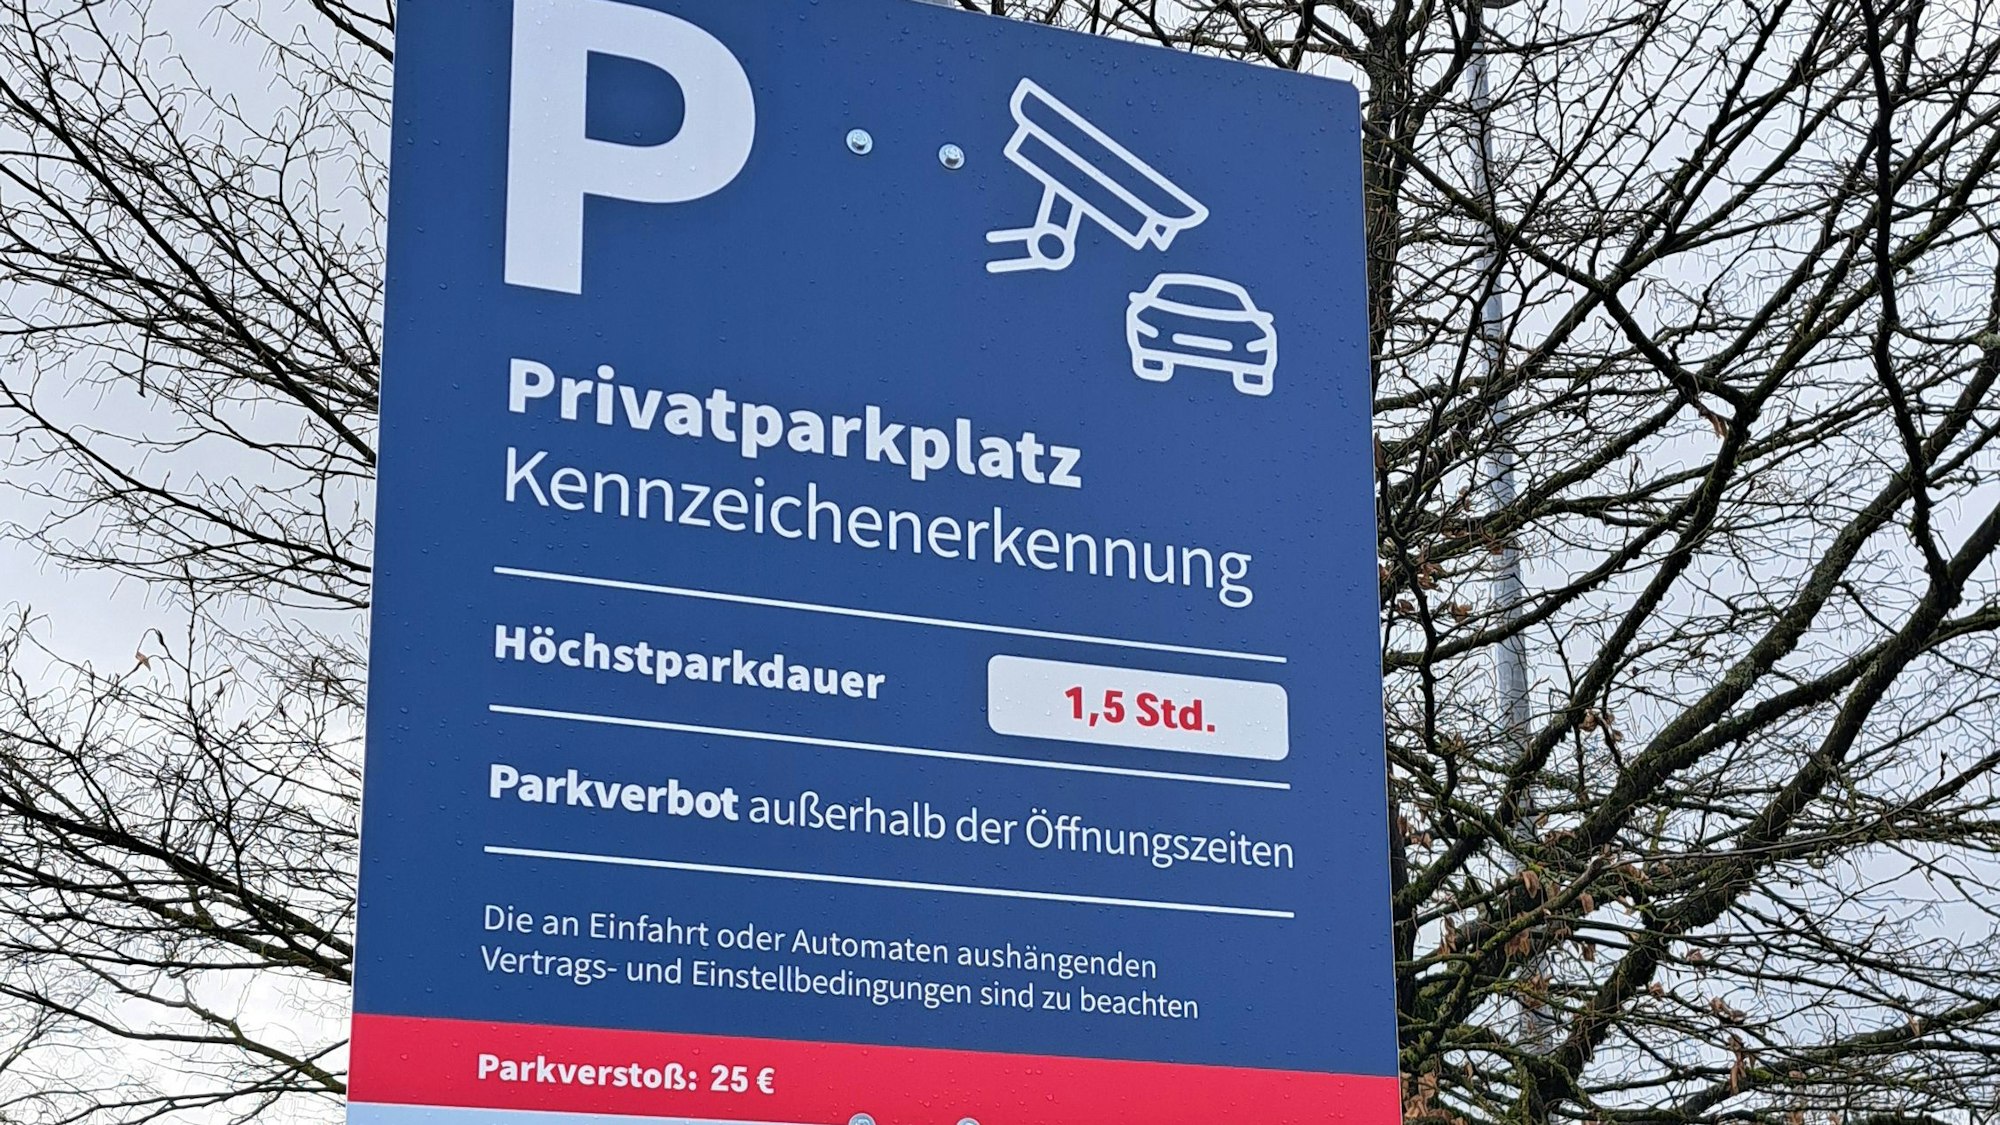 Der Discounter Aldi Süd hat auf dem Parkplatz seiner Filiale in Wipperfürth ein Parksystem mit automatischer kennzeichen-Erfassung eingerichtet. Zu sehen ist ein Hinweisschild.